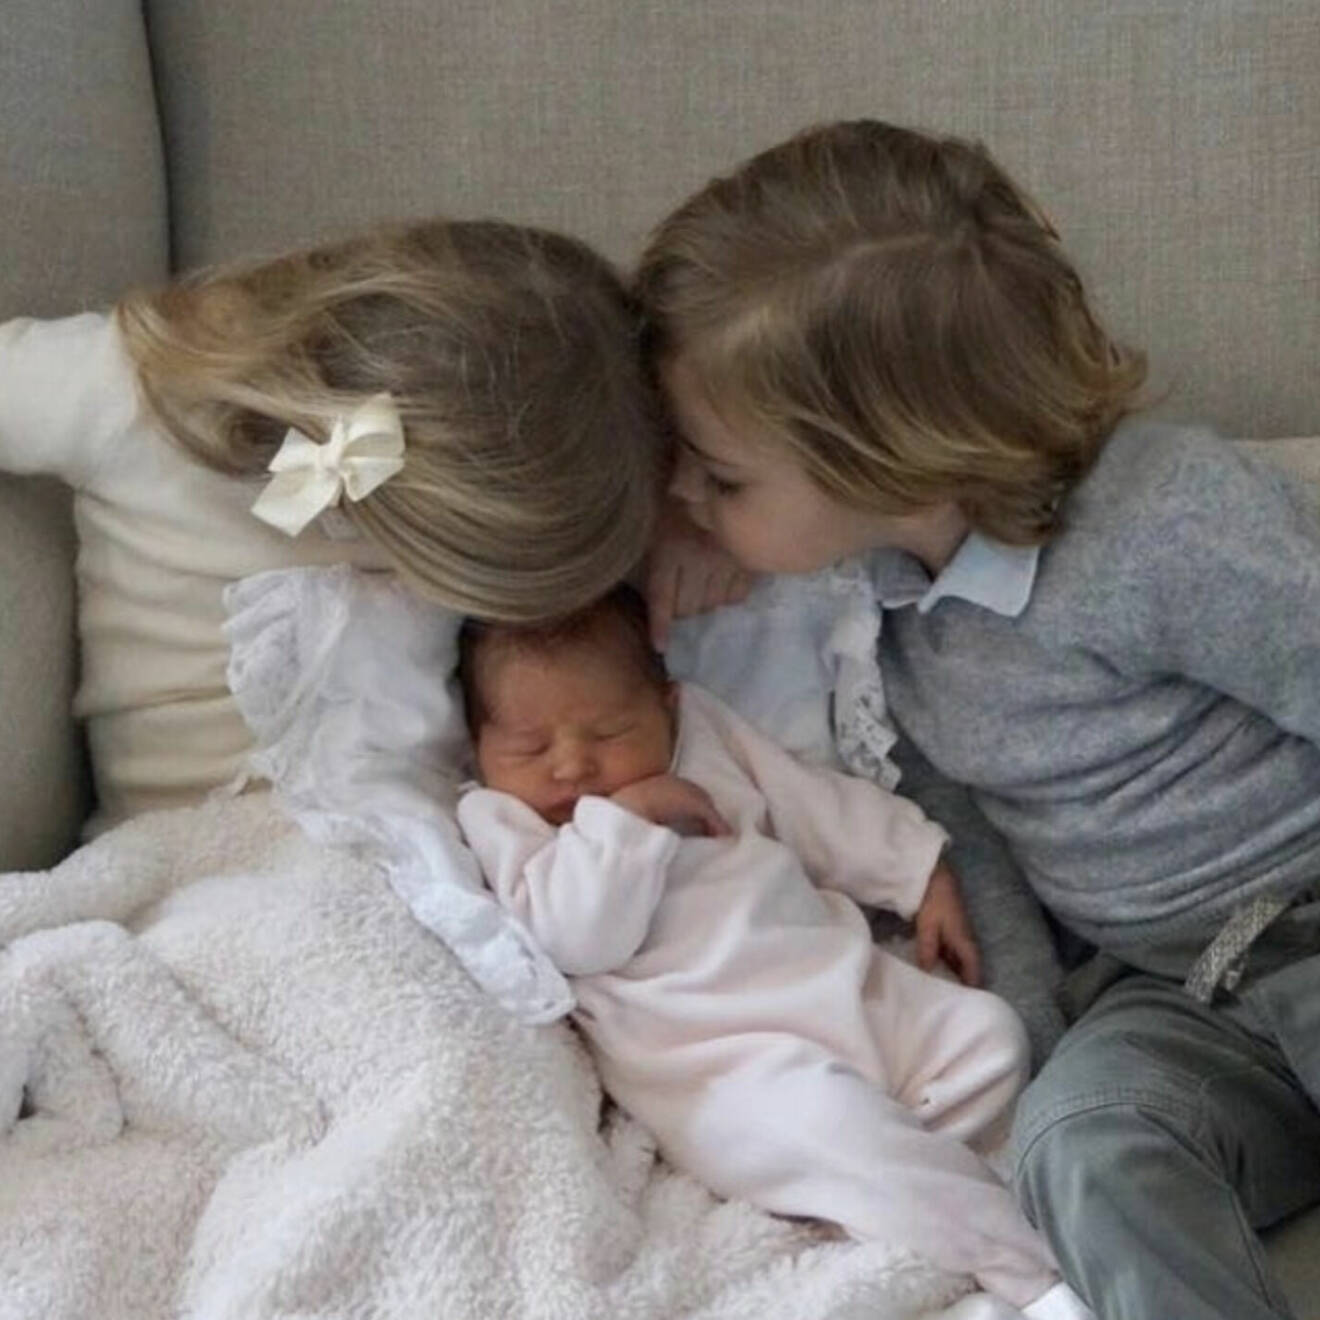 Prinsessan Leonore och prins Nicolas hälsar på sin nyfödda lillasyster prinsessan Adrienne